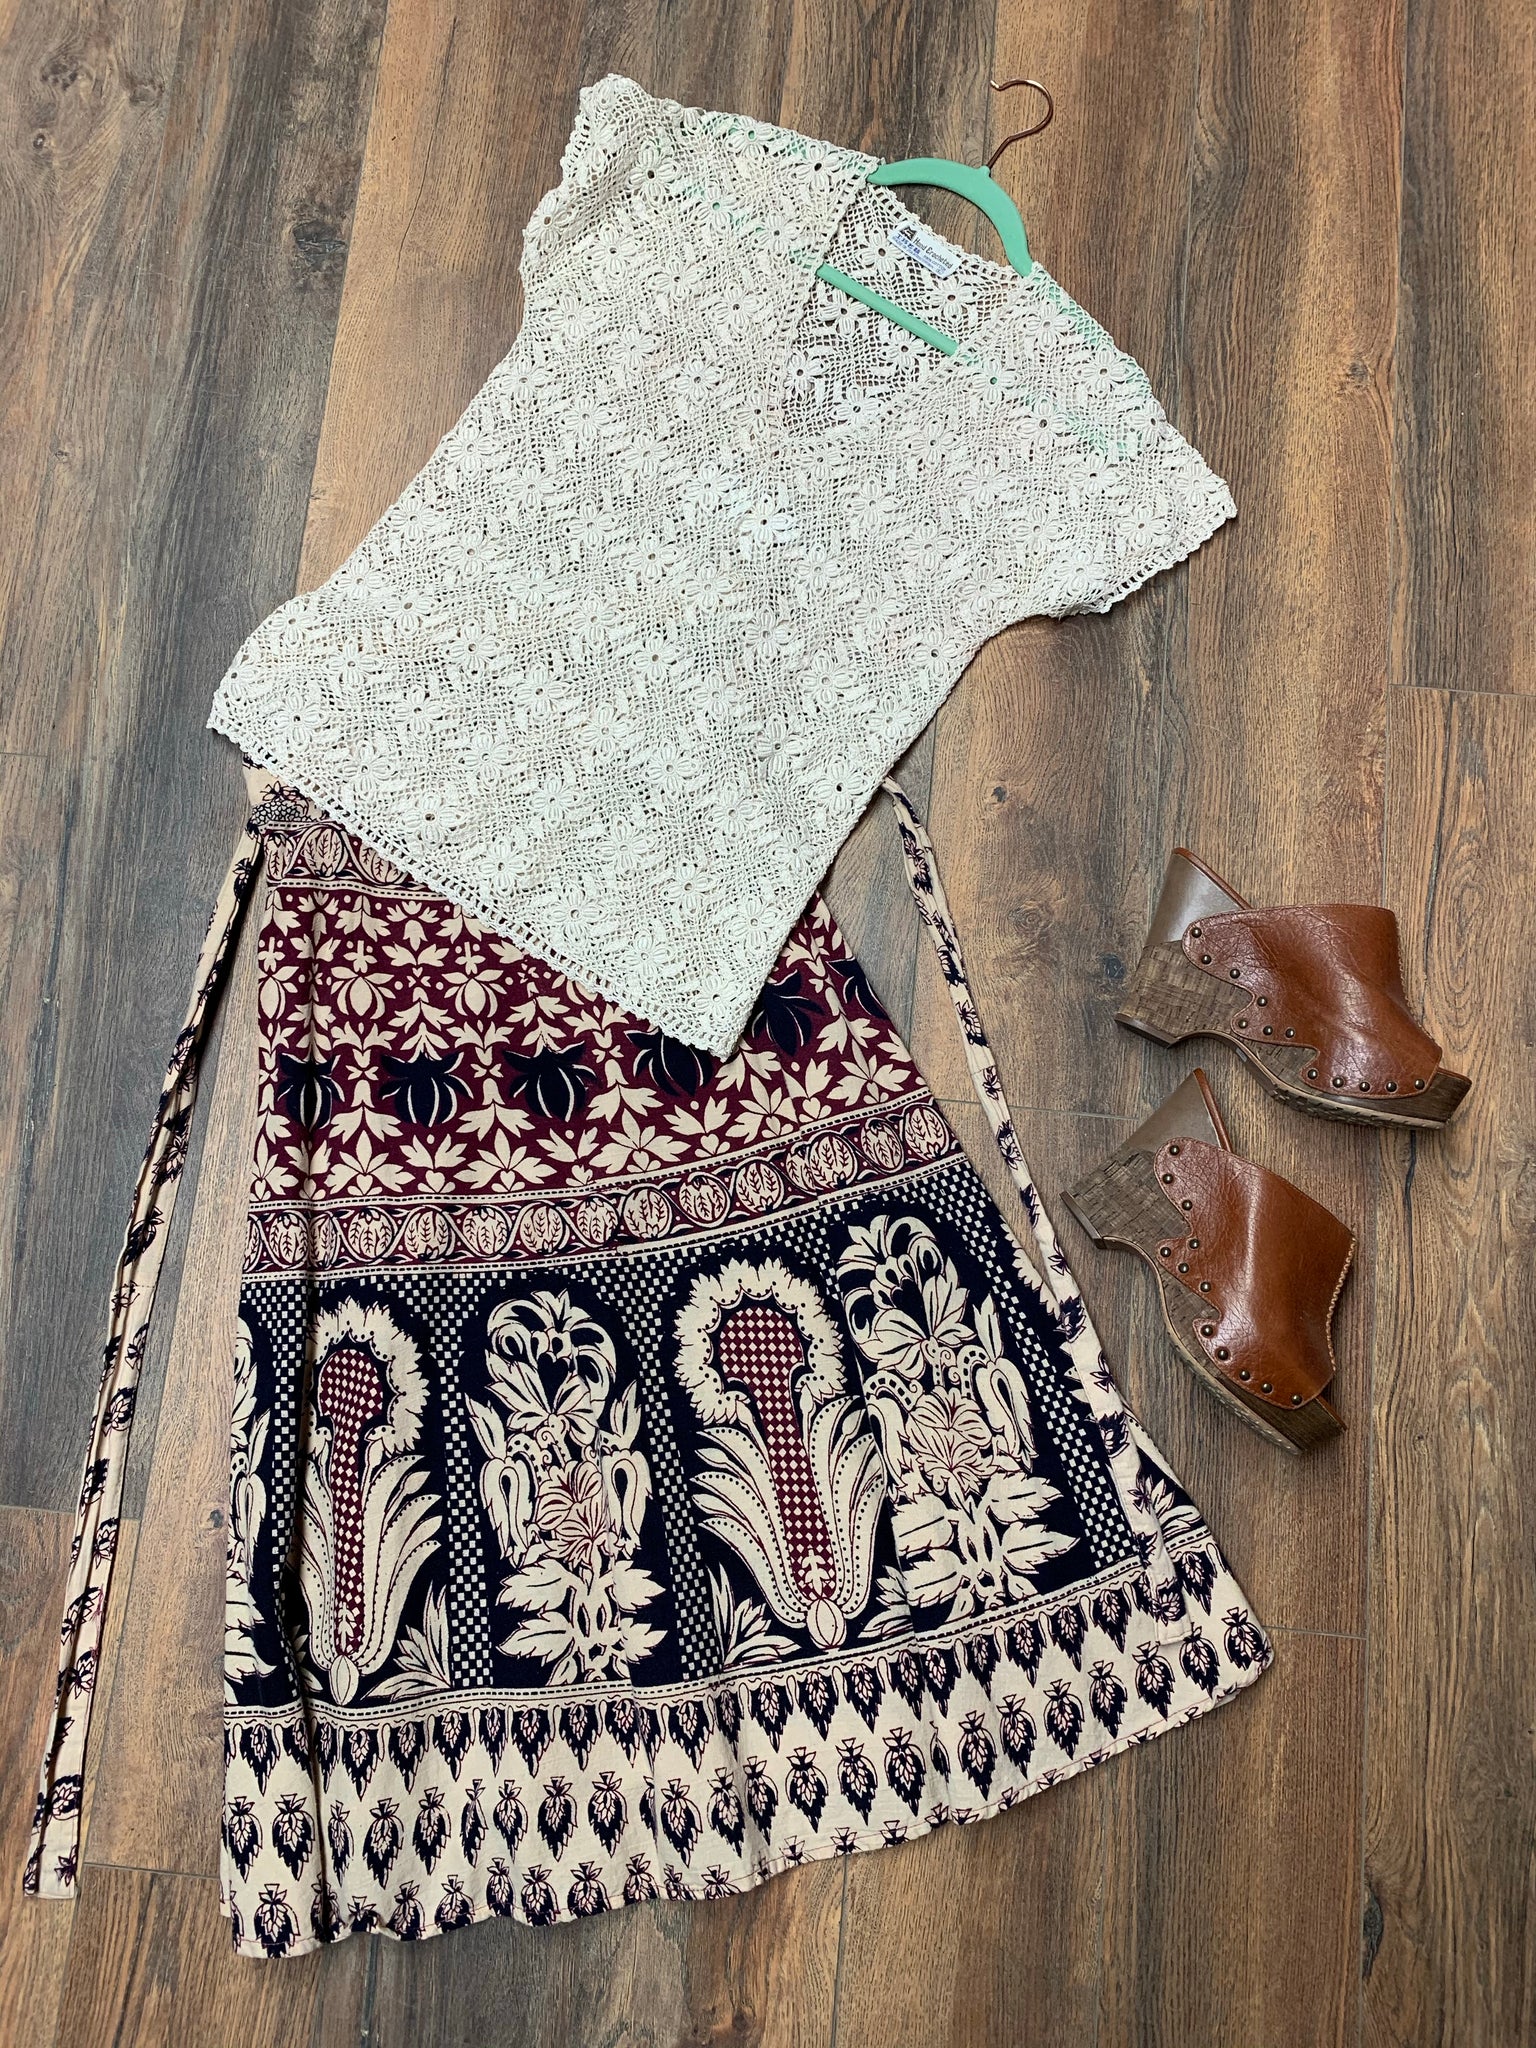 Vintage Crochet Top